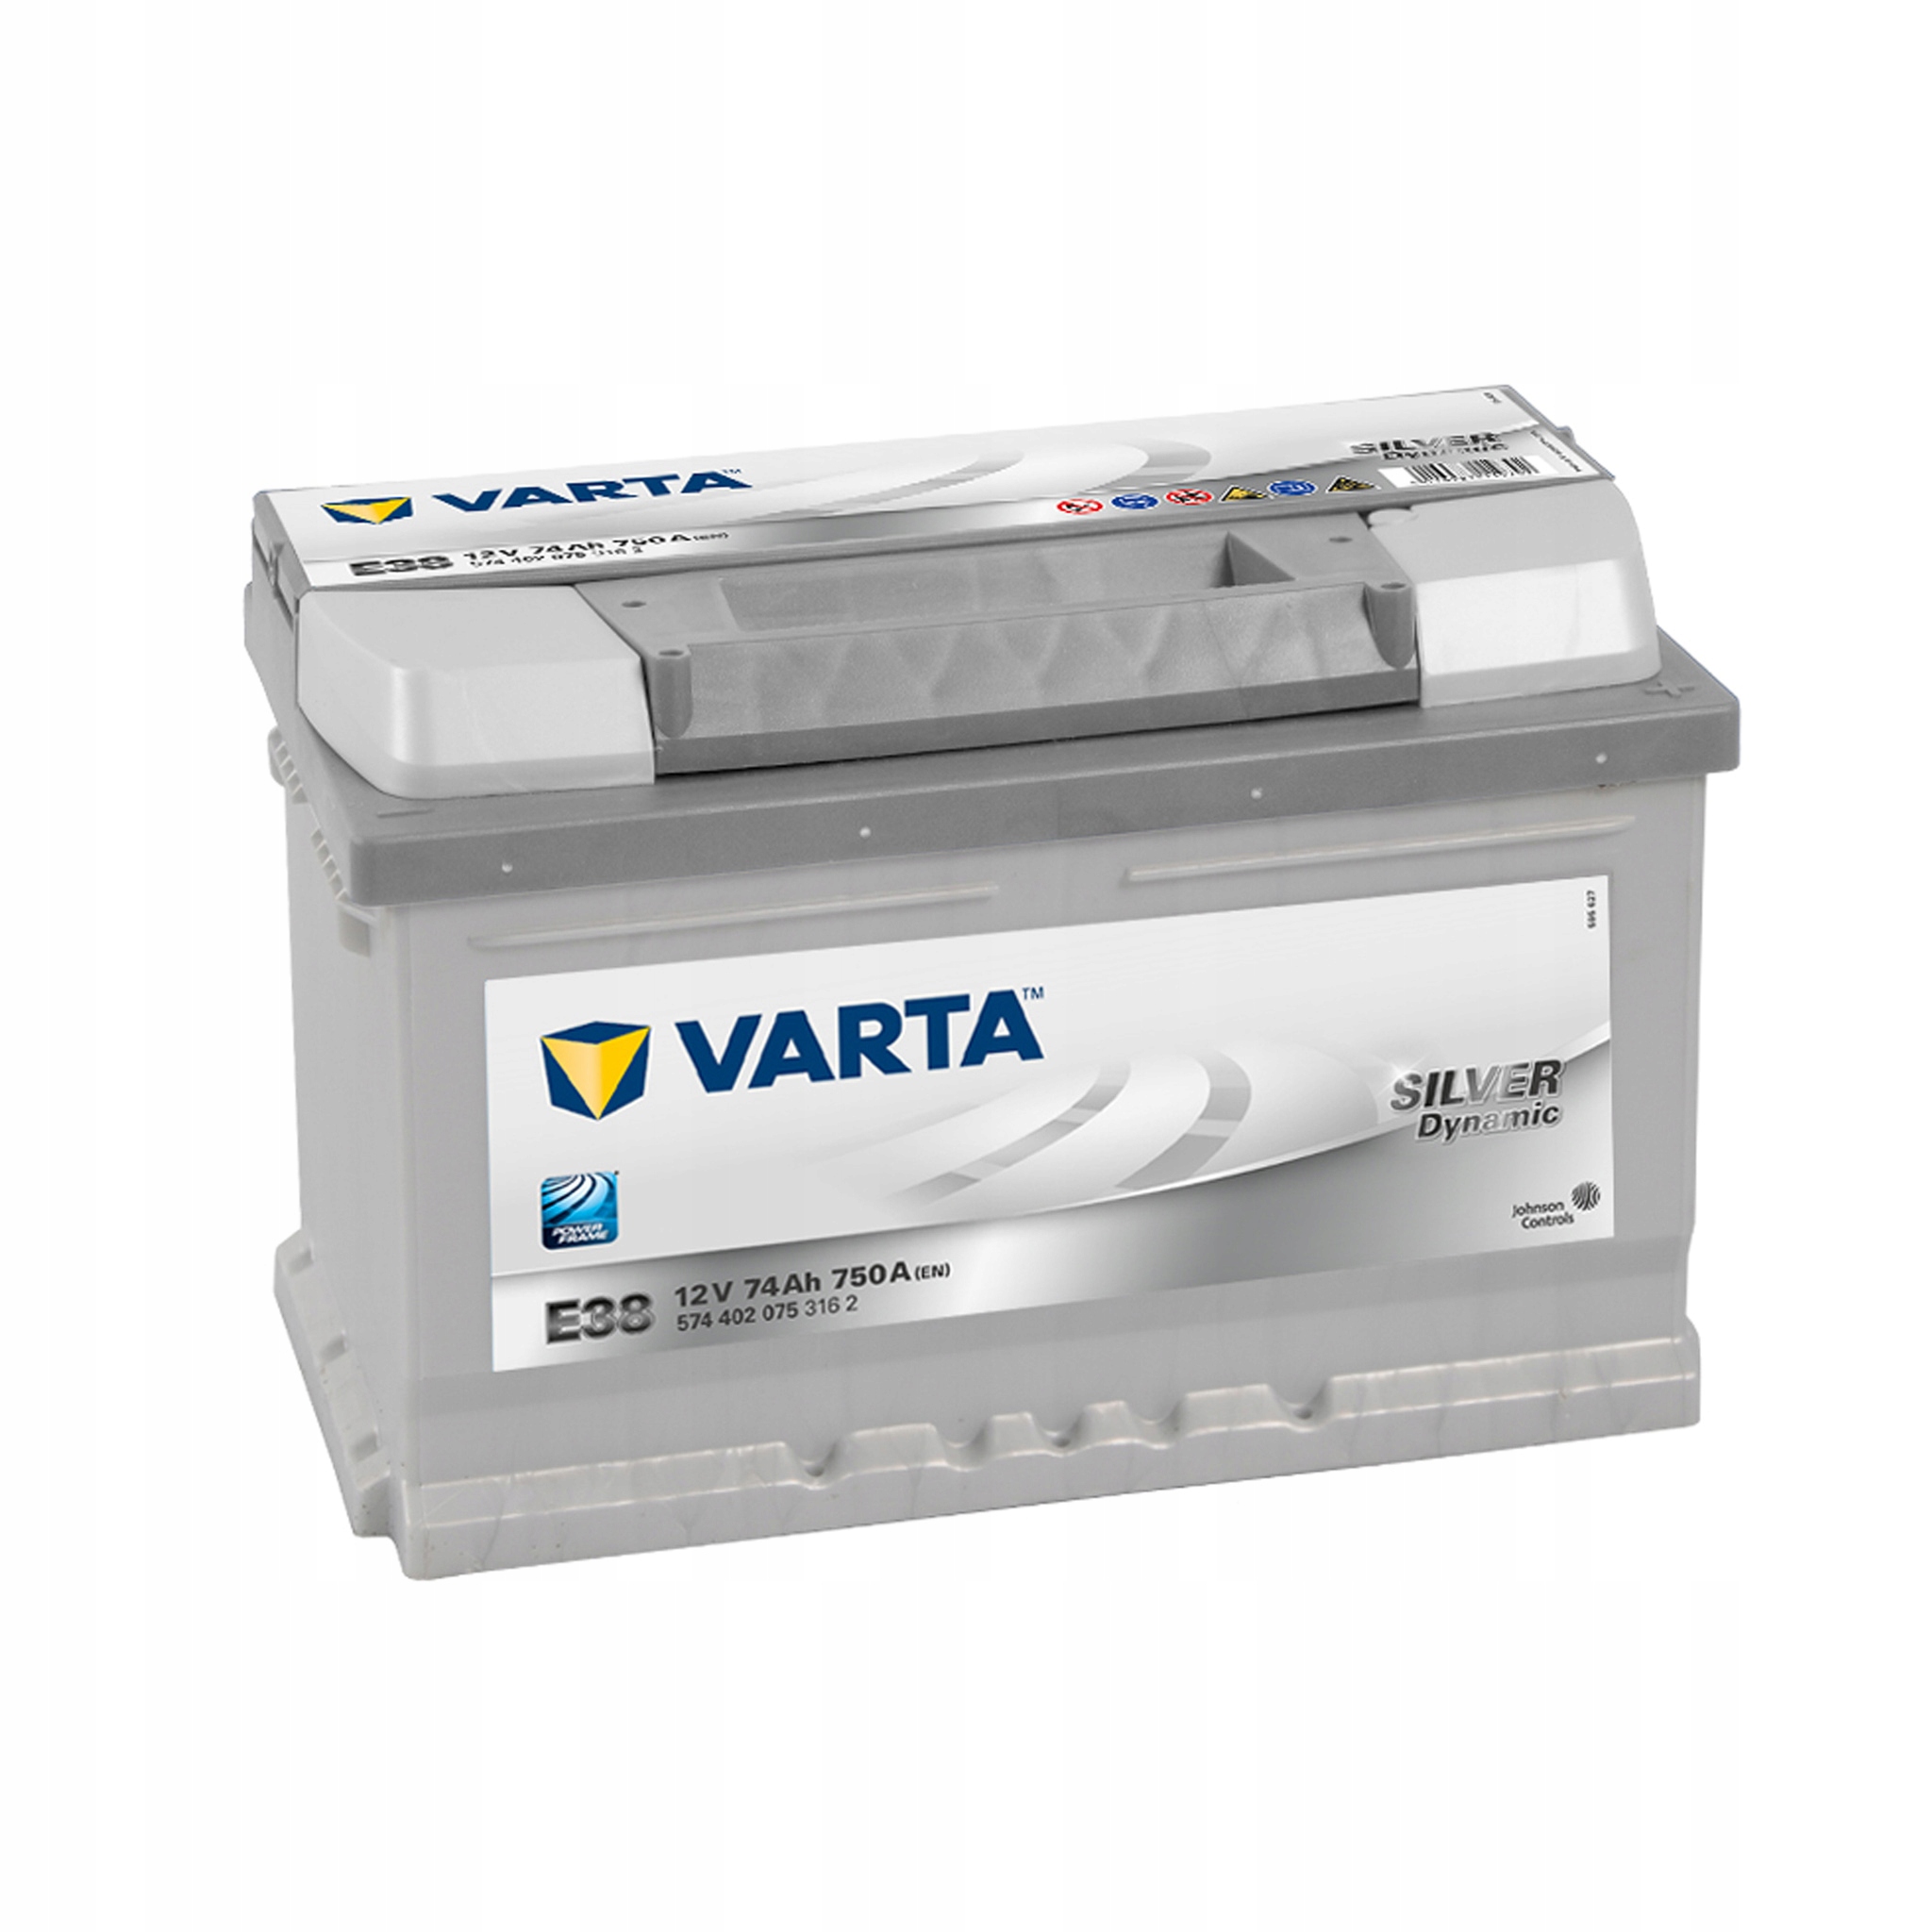 Varta C20. LKW-Batterie Varta 55Ah 12V